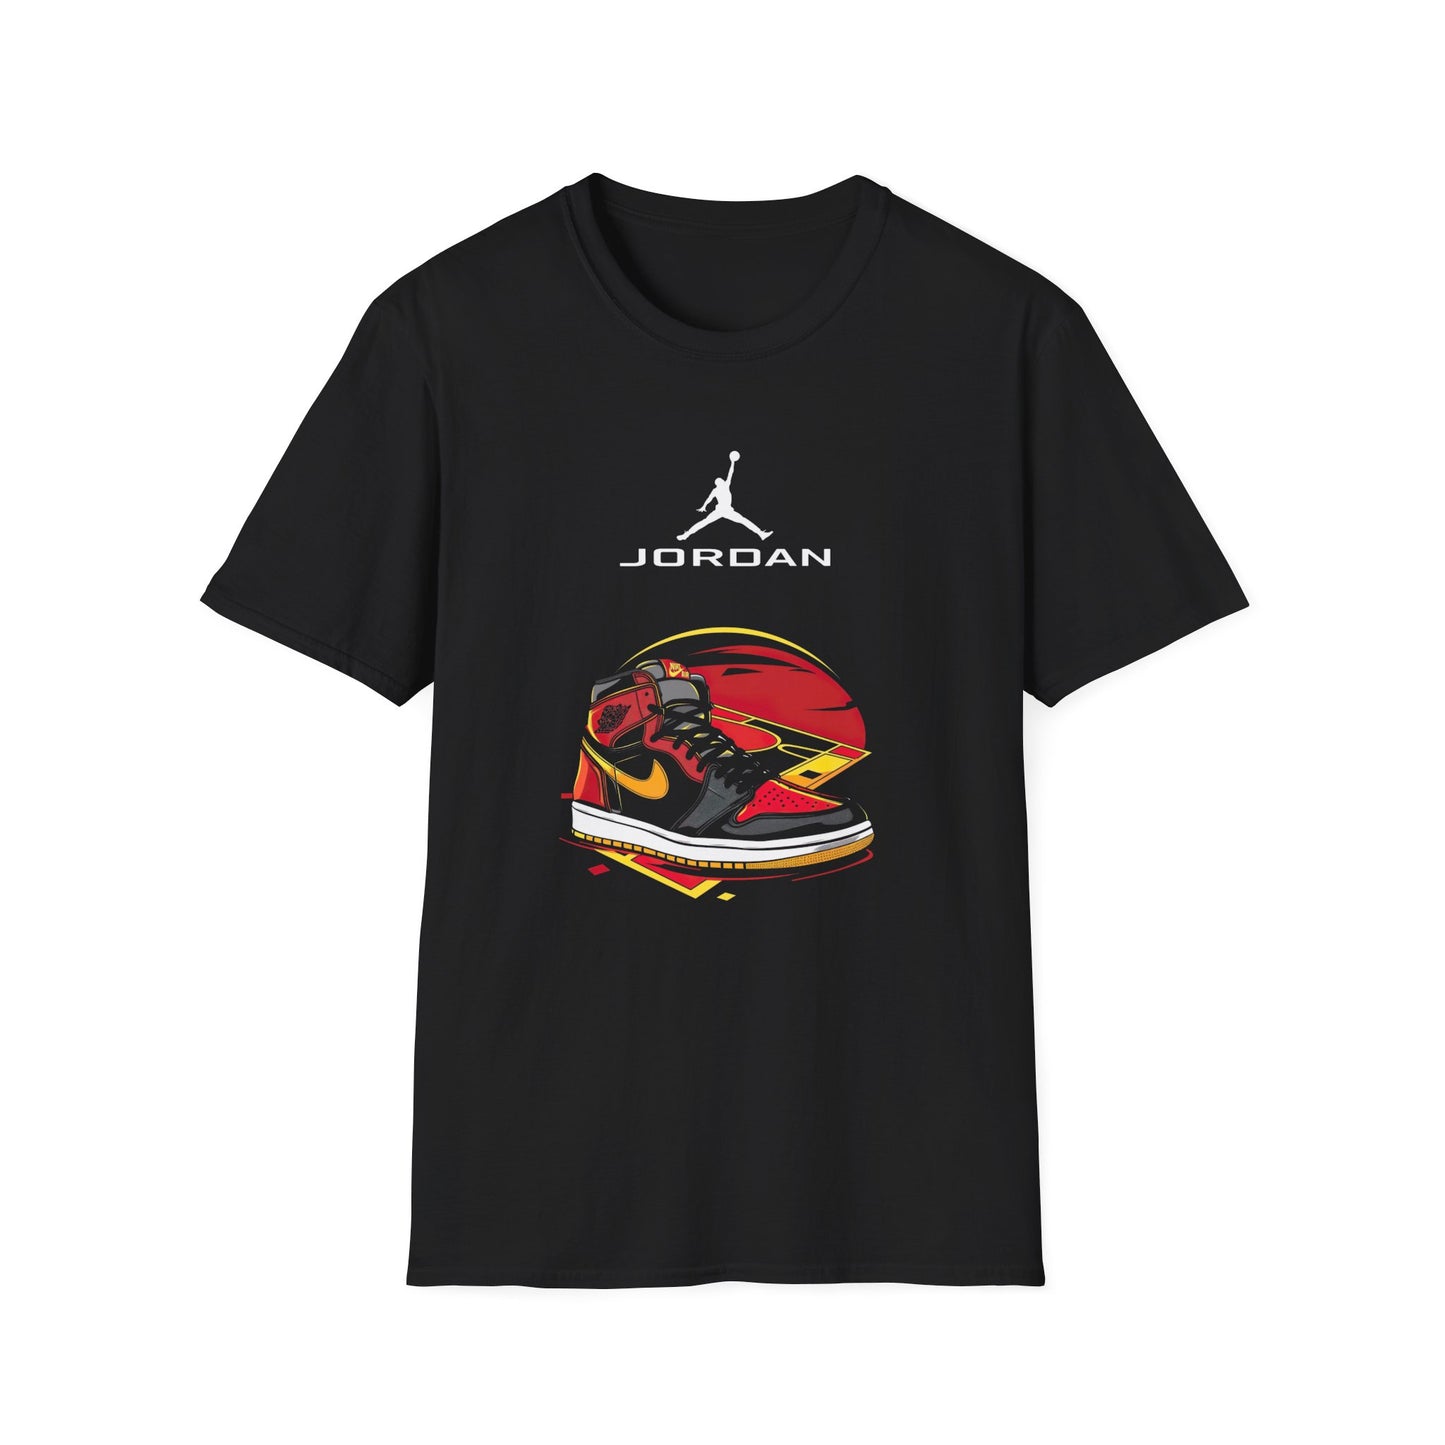 Exclusive Black Air Jordan T-Shirt with Iconic Jordan Sneakers Design – Premium Comfort for Sneakerheads